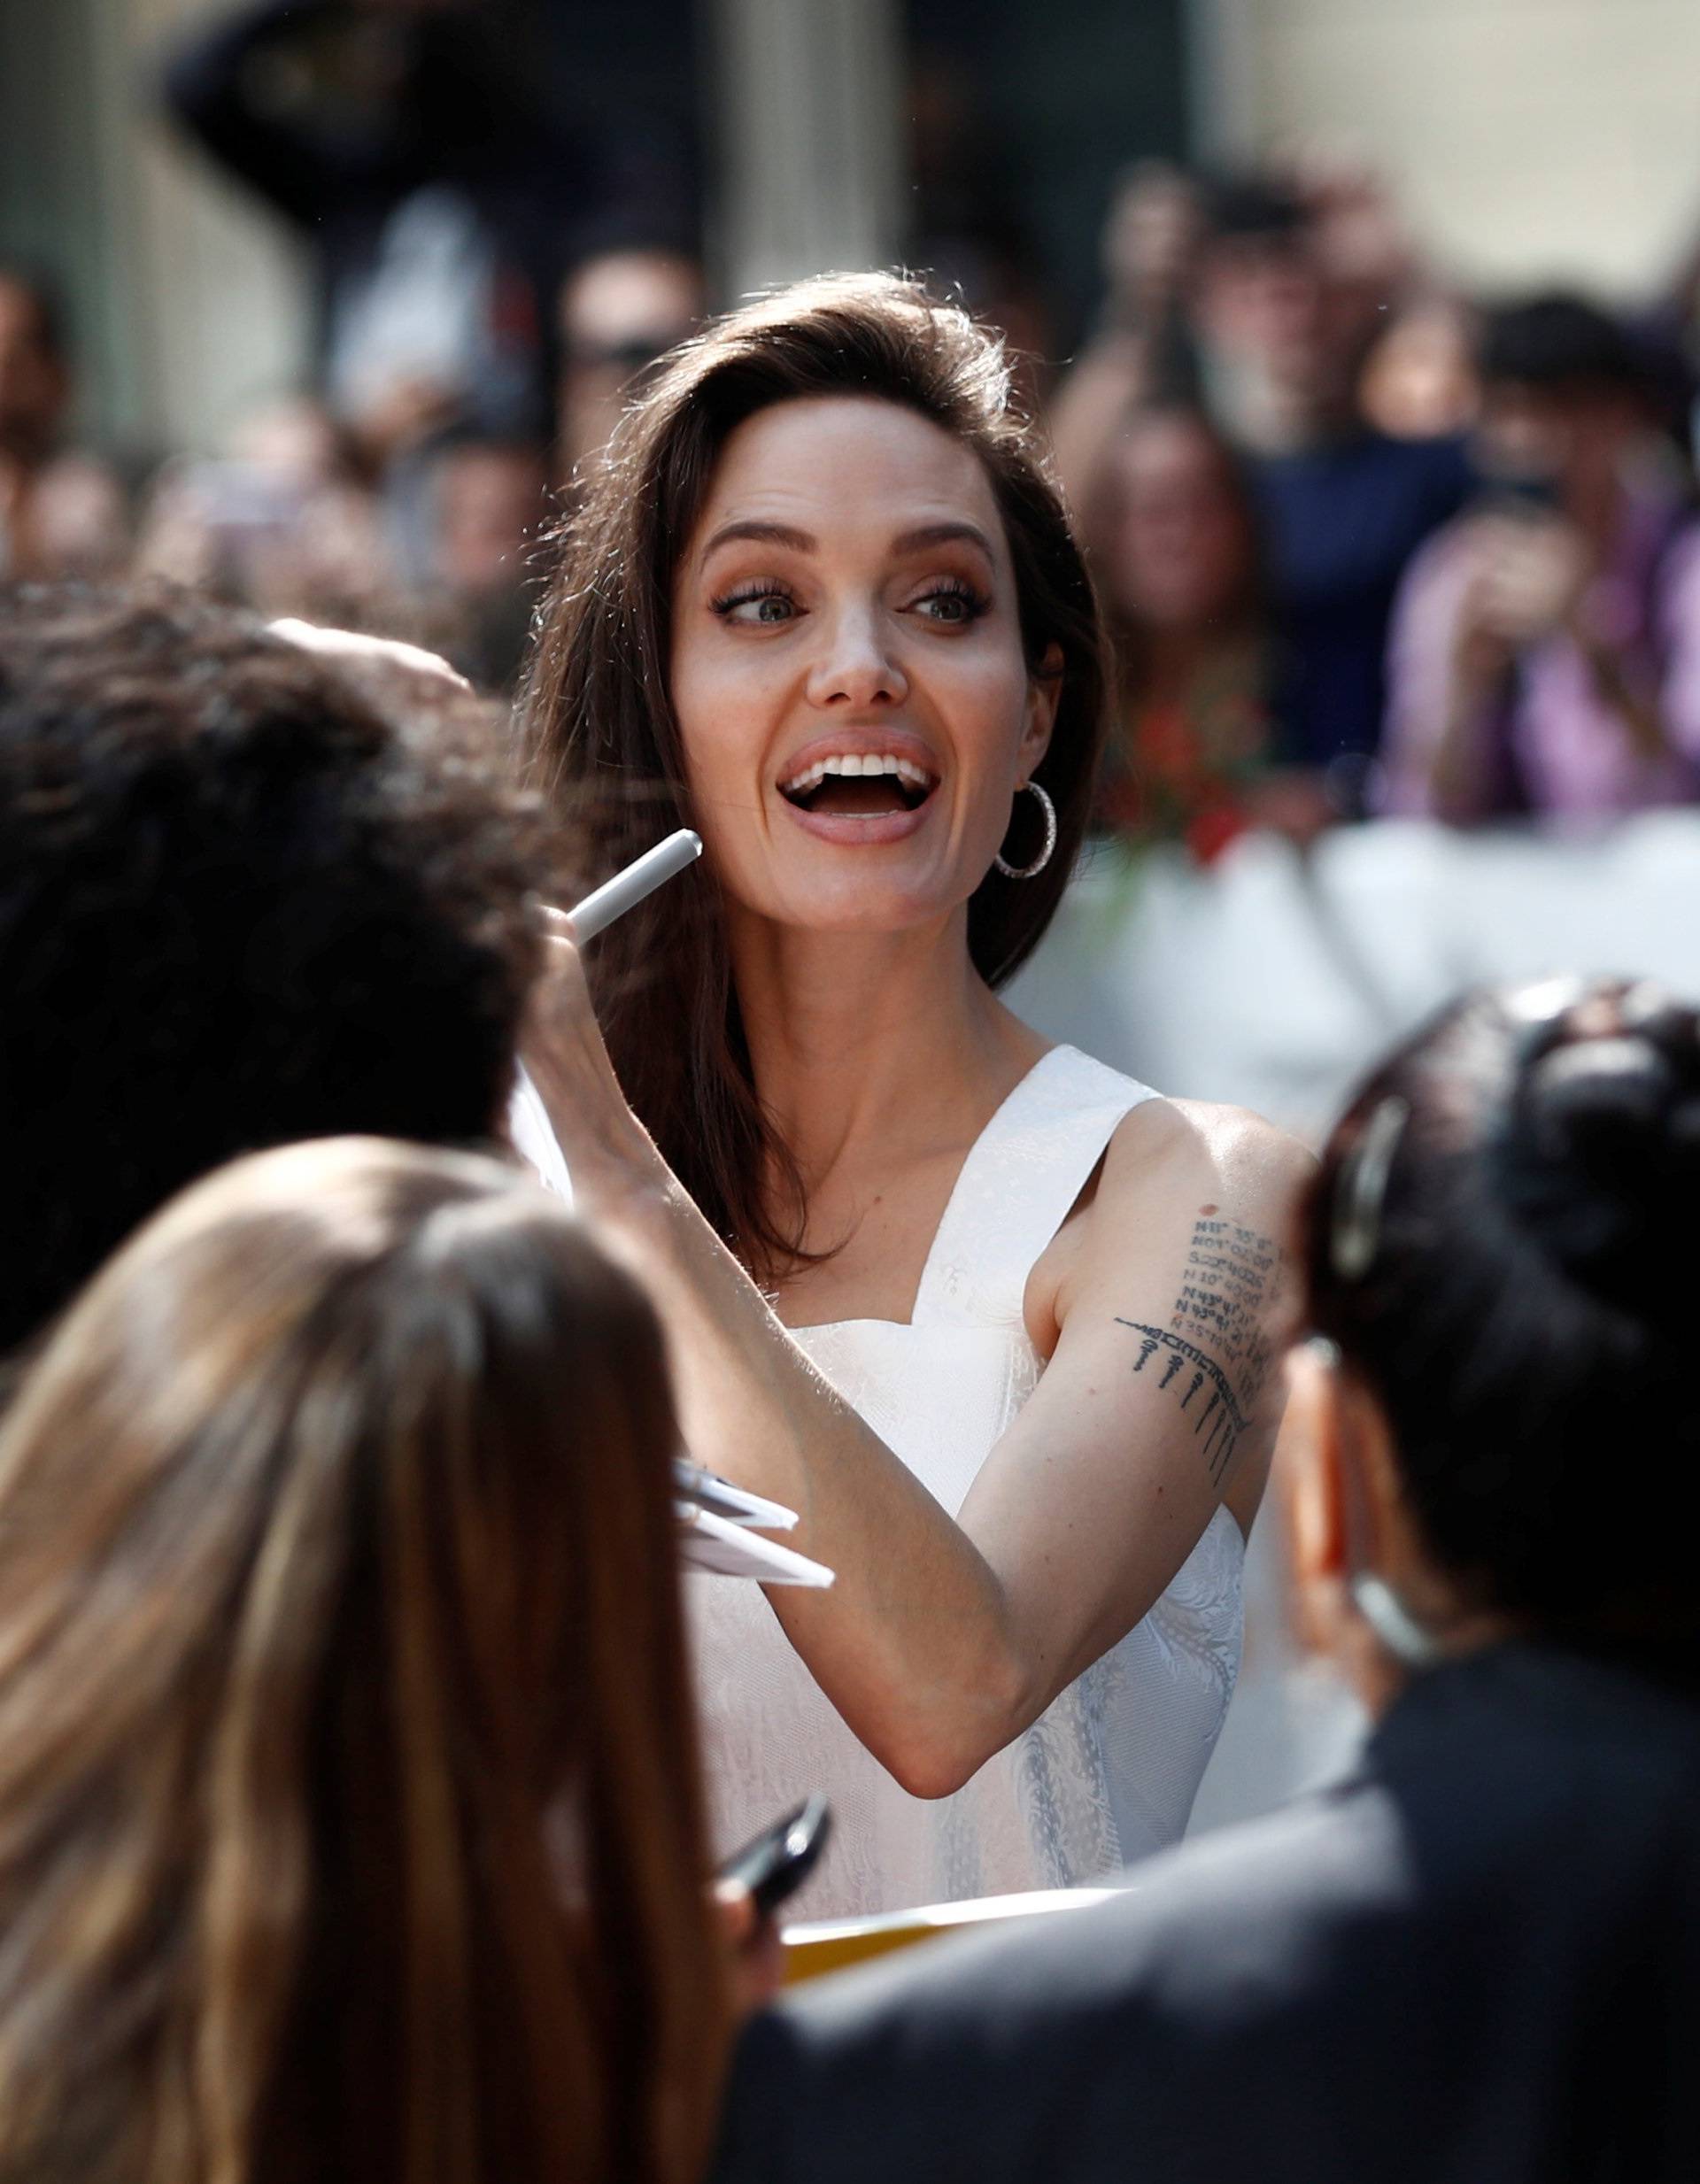 Jolie arrives on the red carpet for the film "The Breadwinner" during the Toronto International Film Festival in Toronto